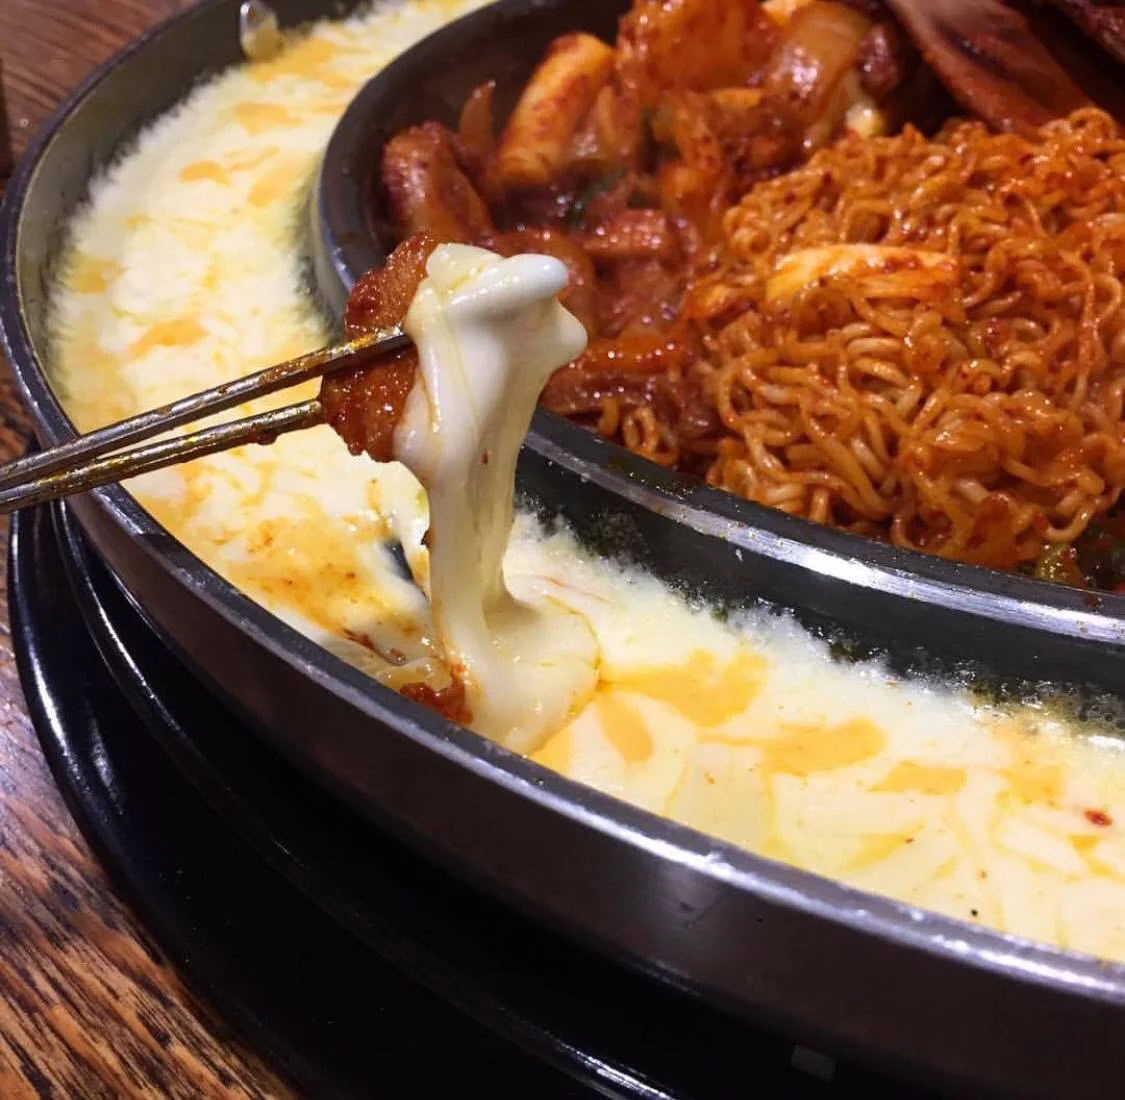 koreai ételek ételek dak galbi csirke sajt a legnépszerűbb